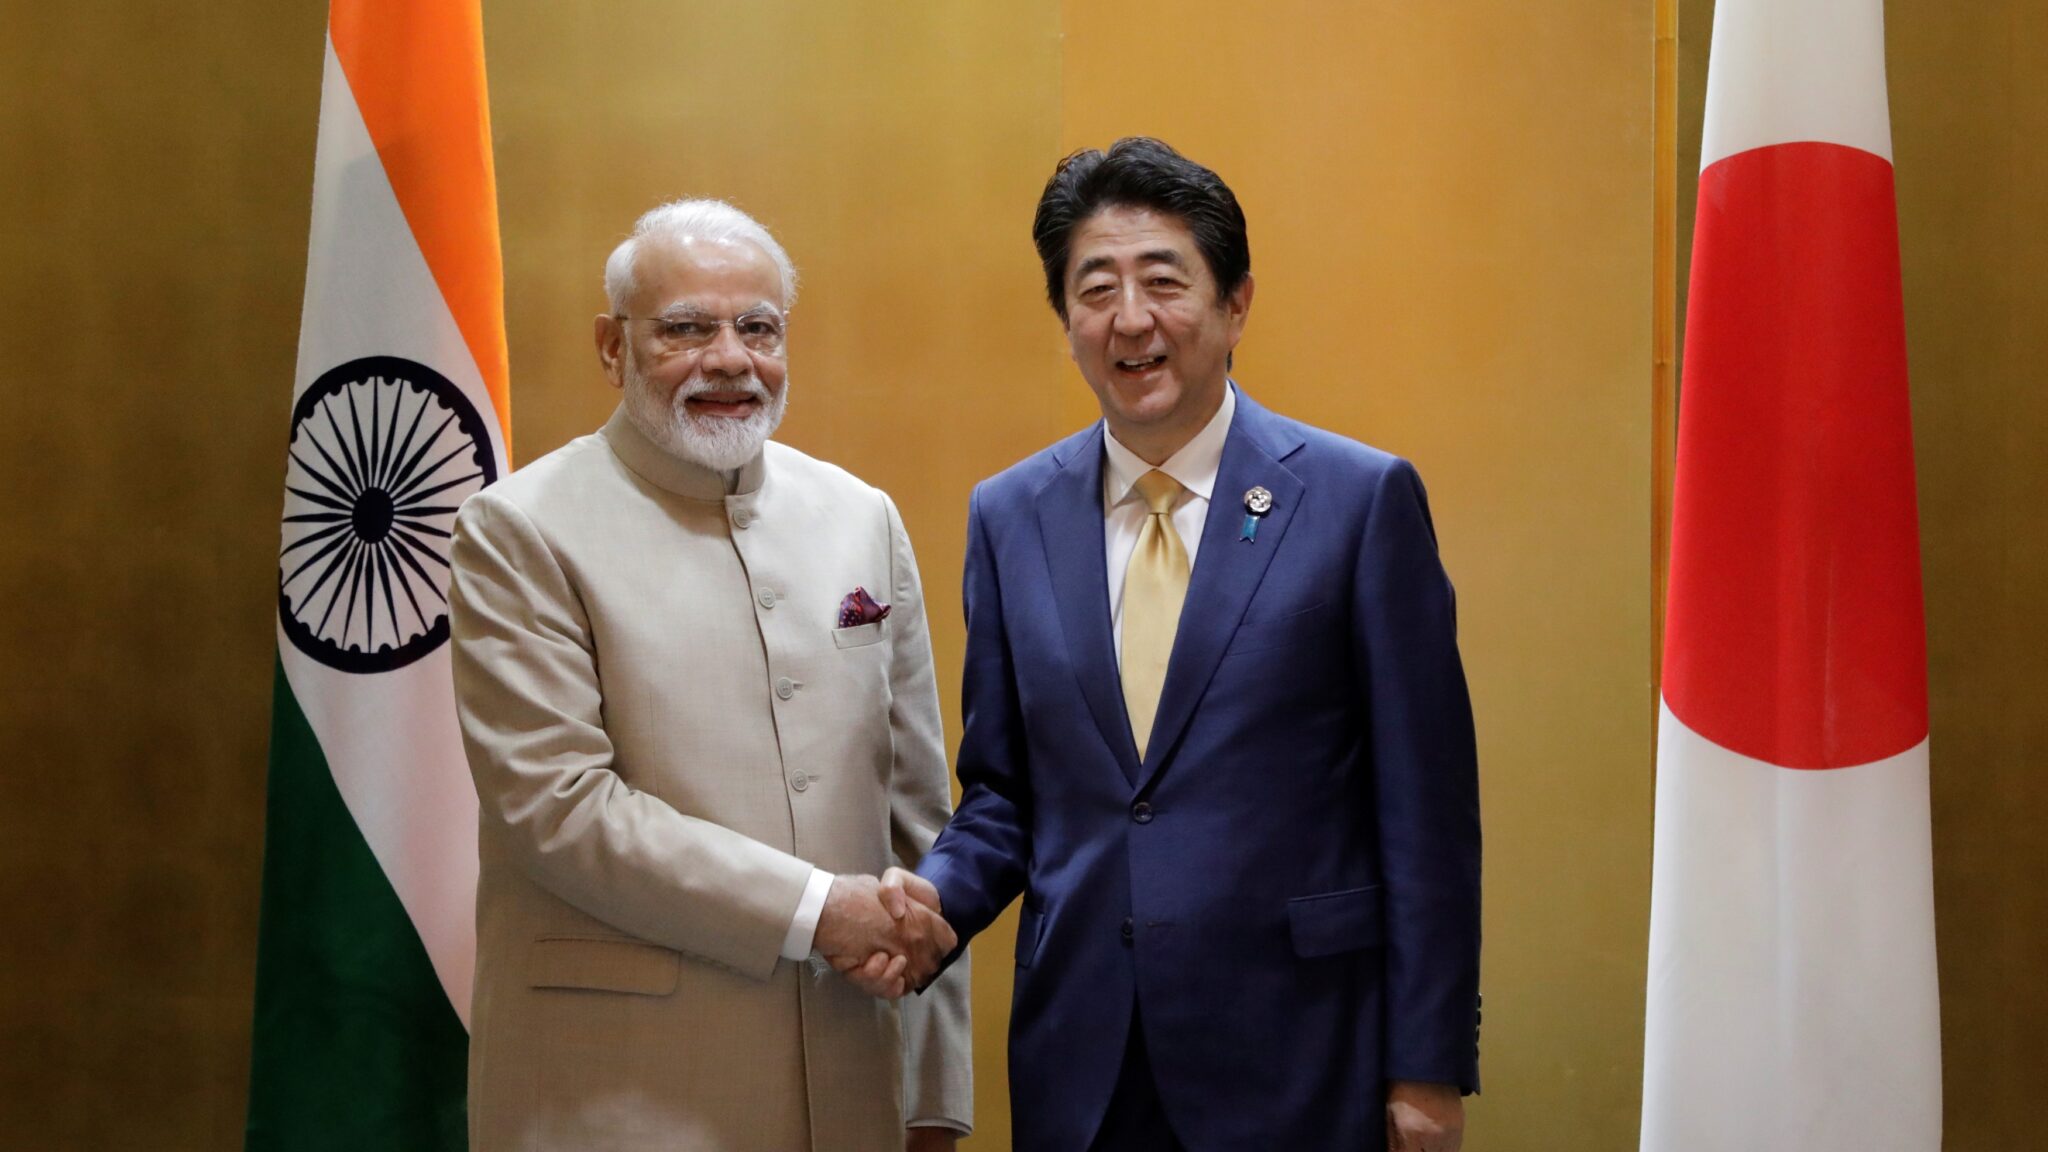 رئيس اليابان مع رئيس الهند